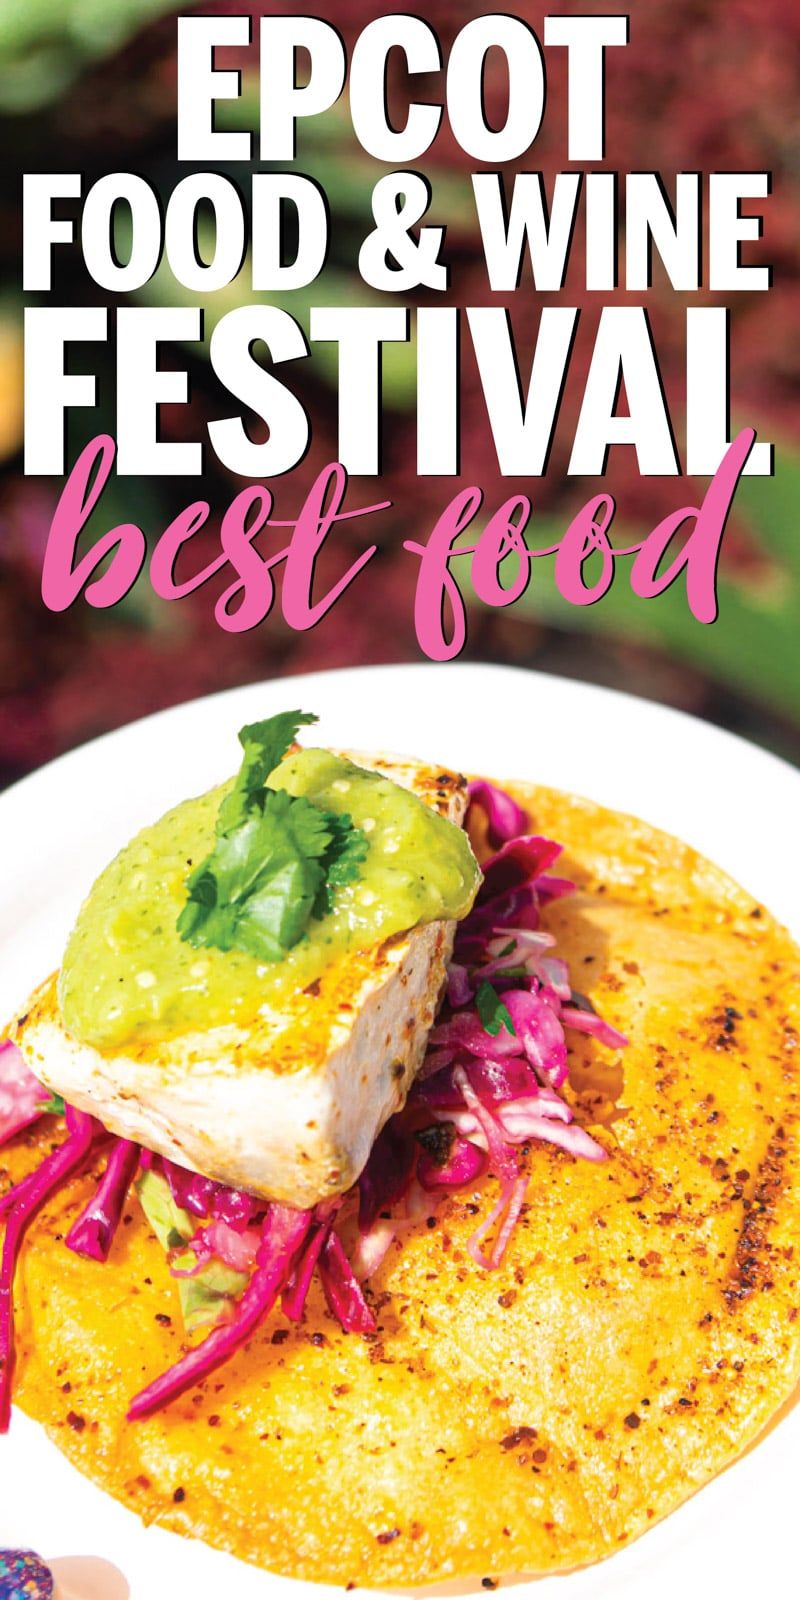 एपकोट फूड एंड वाइन फेस्टिवल 2019 मेनू पर सभी चीज़ों की तस्वीरें और समीक्षाएं! जब आप डिज़्नी के भोजन और वाइन उत्सव में जाते हैं तो 10 चीजों की एक शीर्ष सूची - 10 दिलकश व्यंजन और 10 मिठाइयाँ! यह डिज़नी फूड एंड वाइन फेस्टिवल 2019 में भोजन के लिए अंतिम मार्गदर्शिका है!